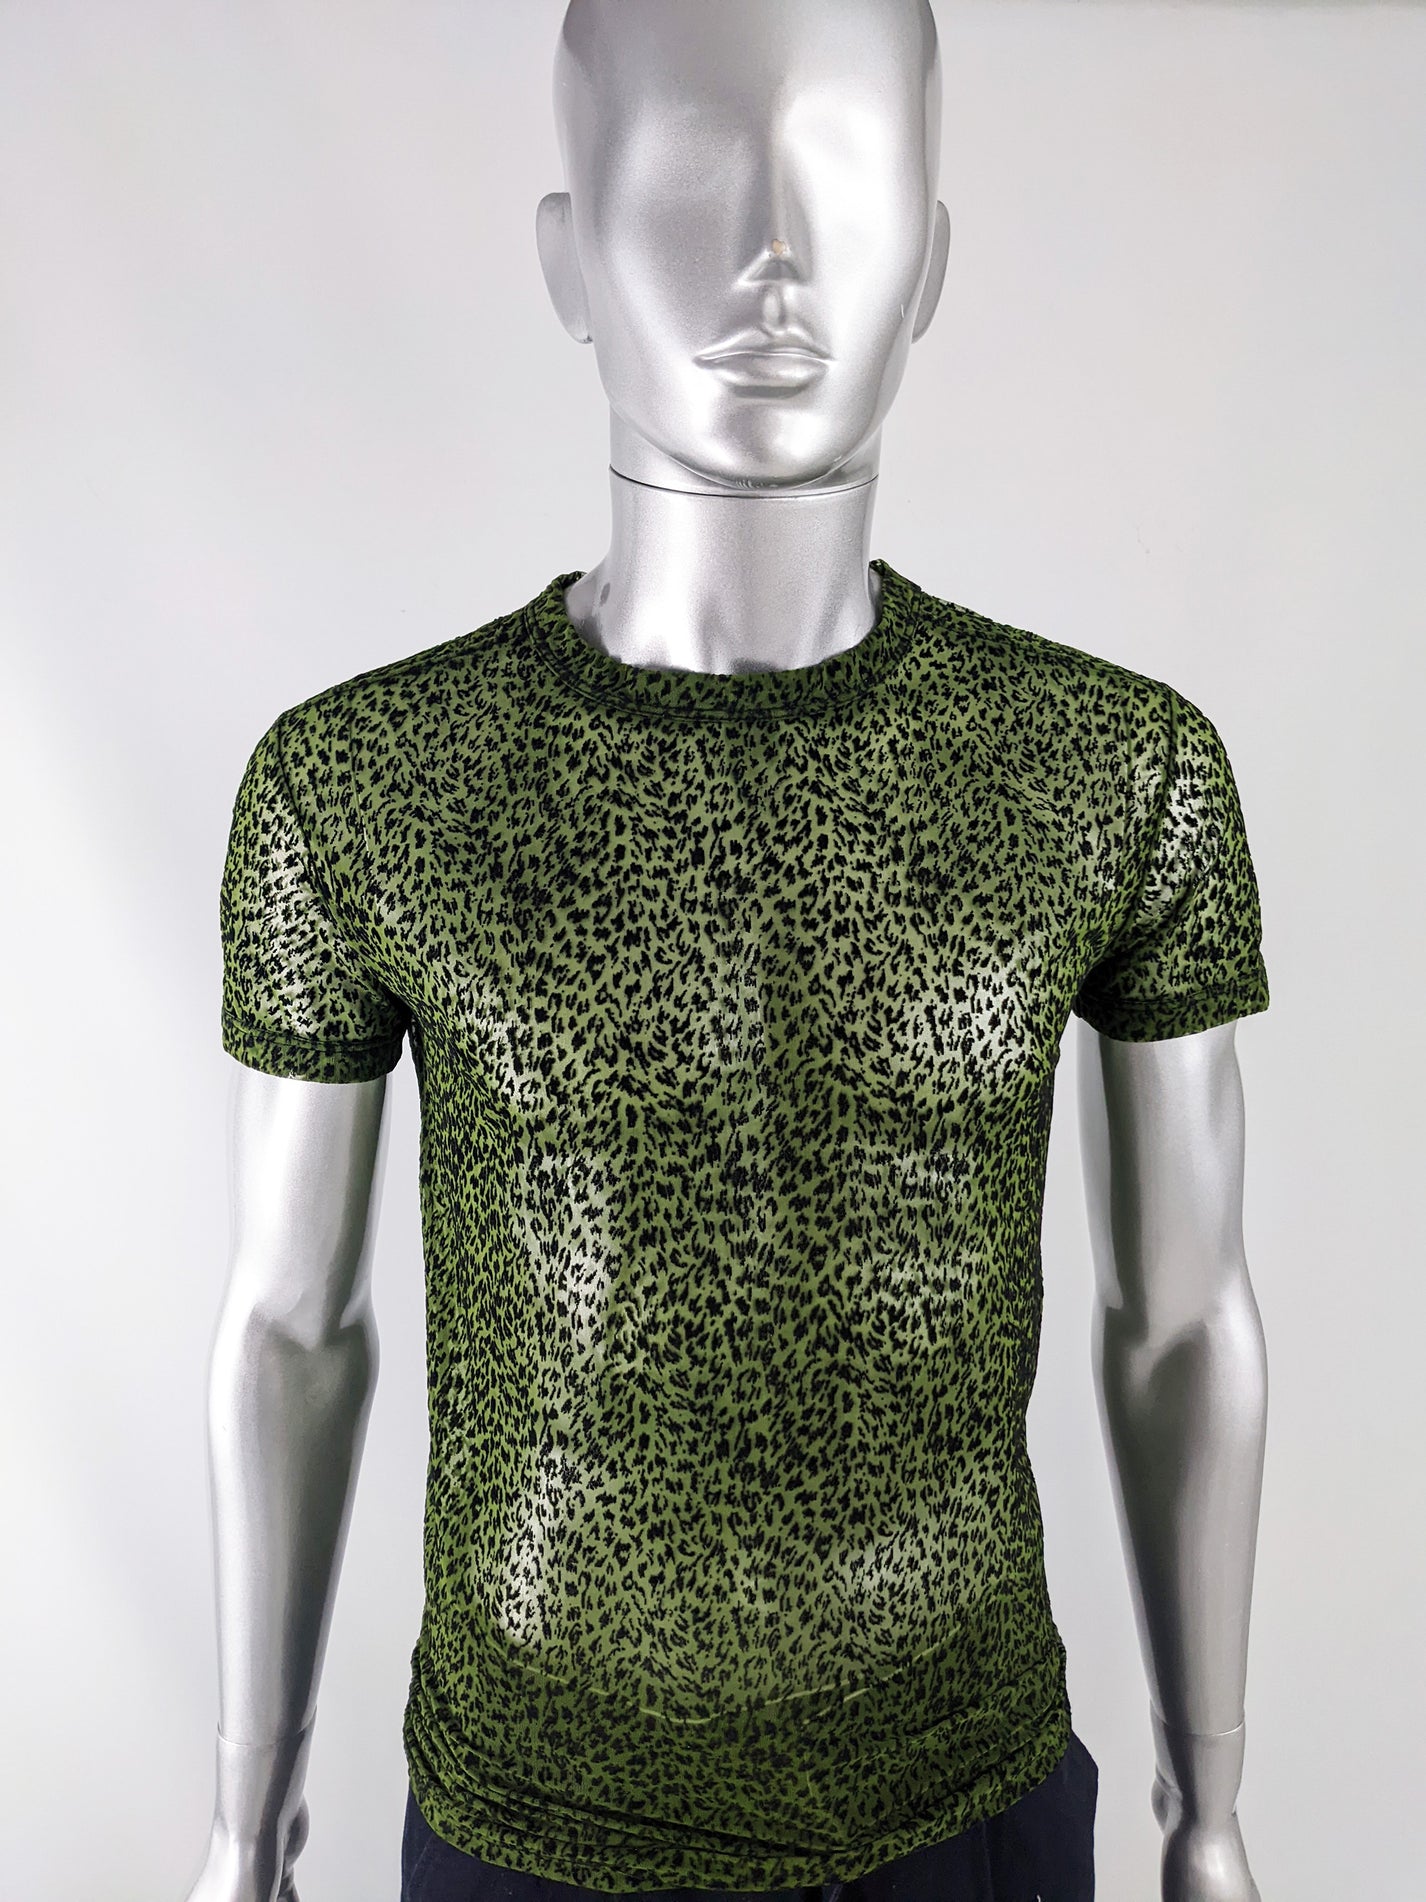 Gianni Versace Versus Vintage Mens Green Sheer Mesh Shirt, 1990s – Zeus ...